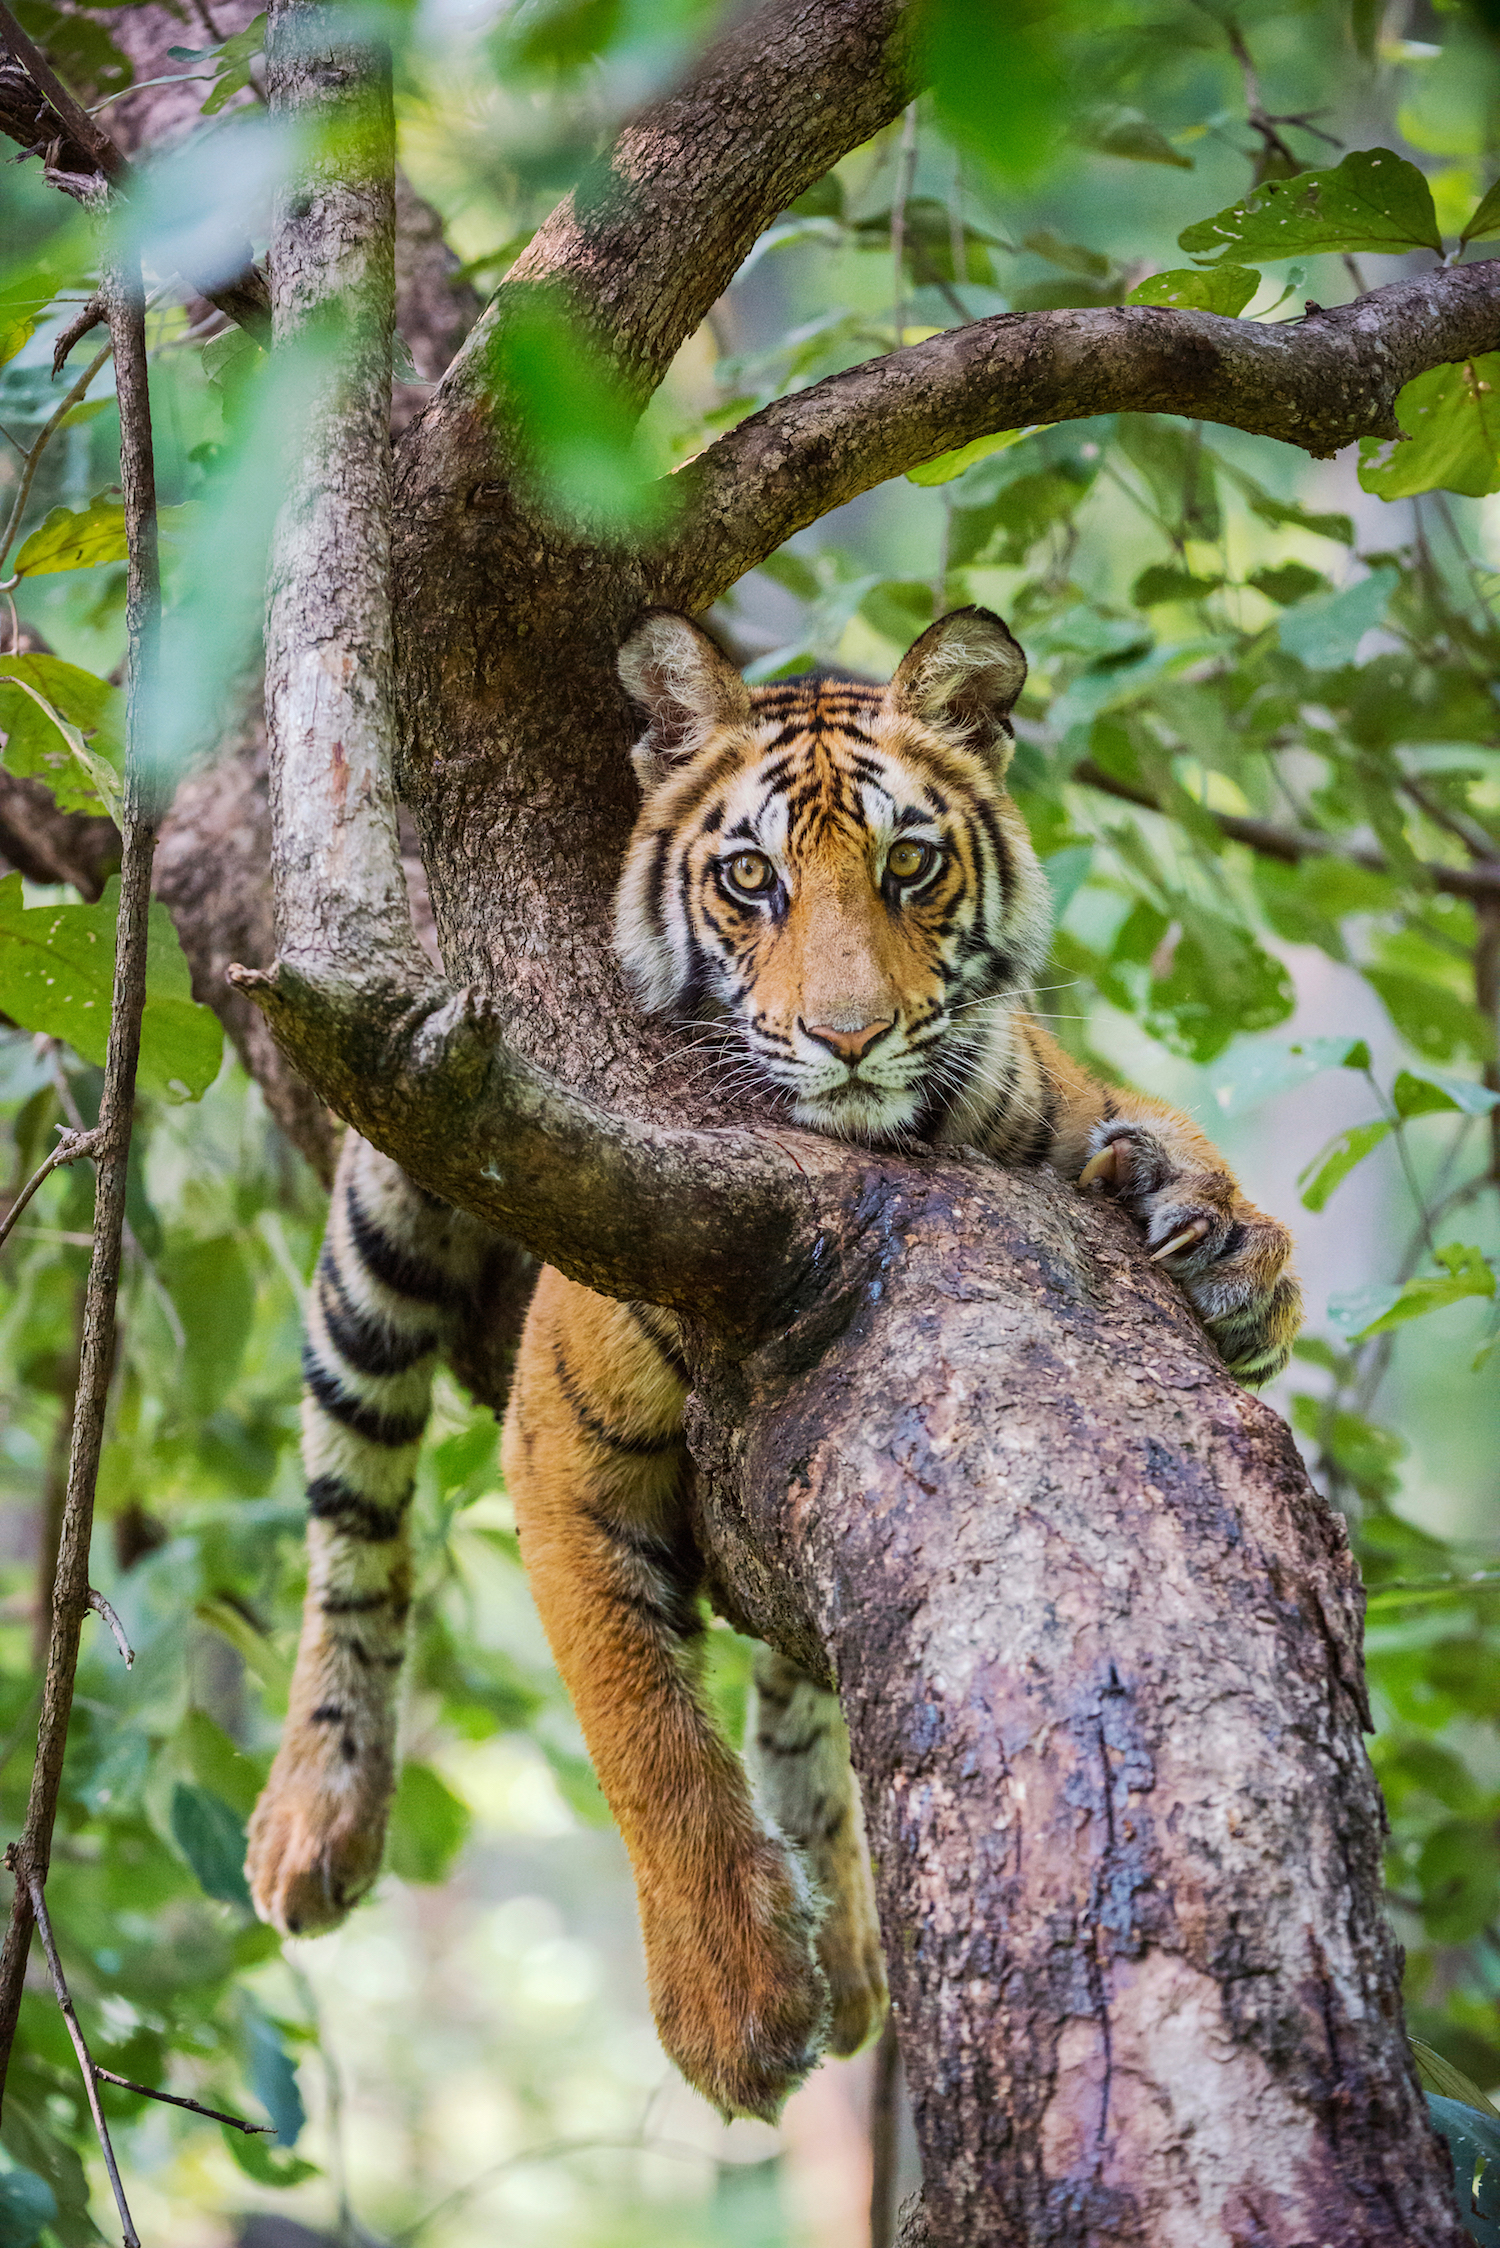 India's Bandhavgarh Tiger Reserve